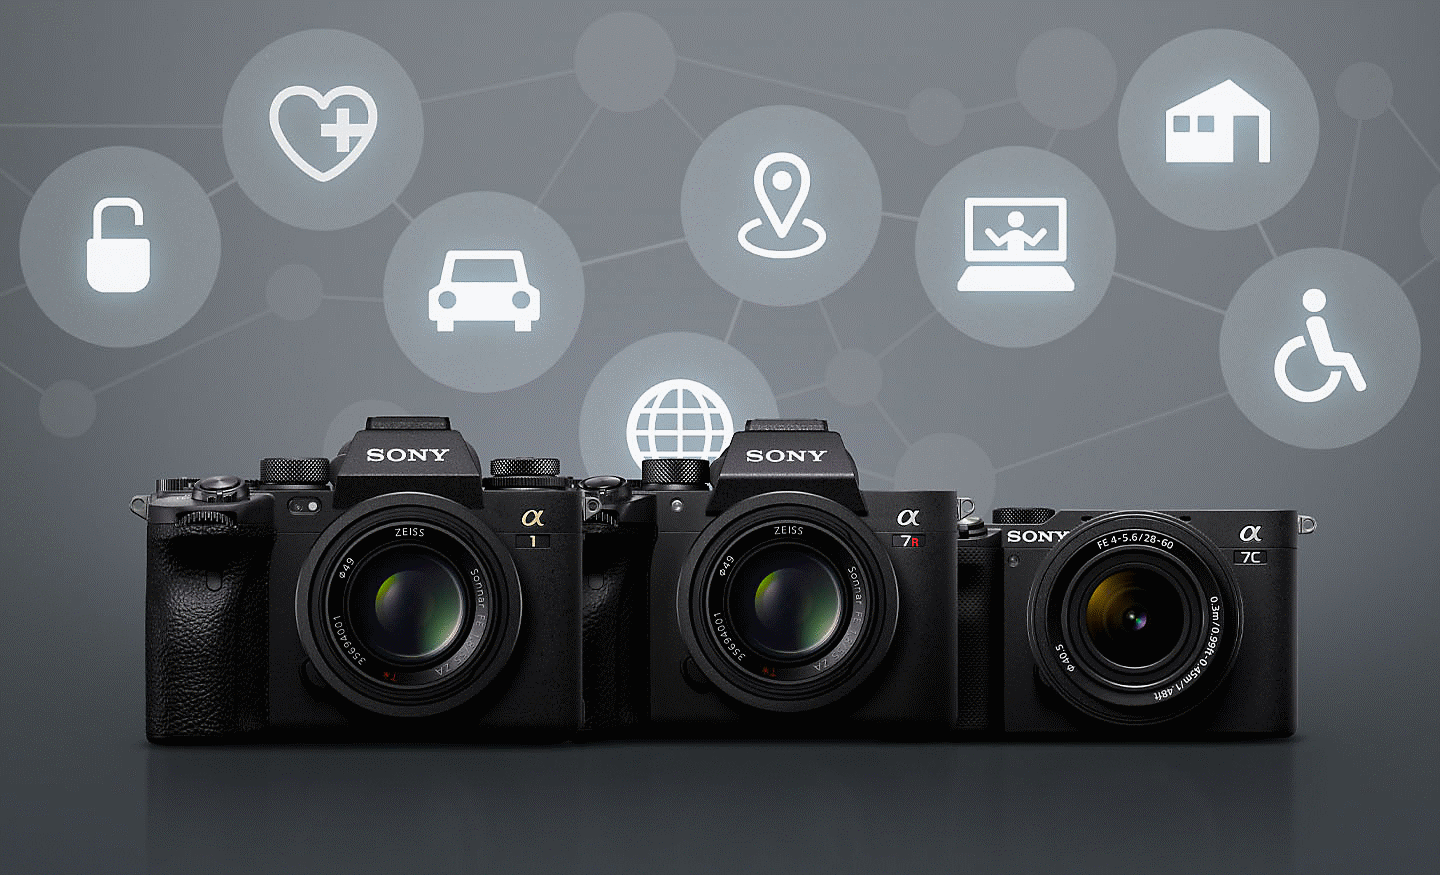 Štyri fotoaparáty od spoločnosti Sony pred sivým pozadím s rôznymi bielymi ikonami predstavujúcimi možnosti pripojenia na diaľku